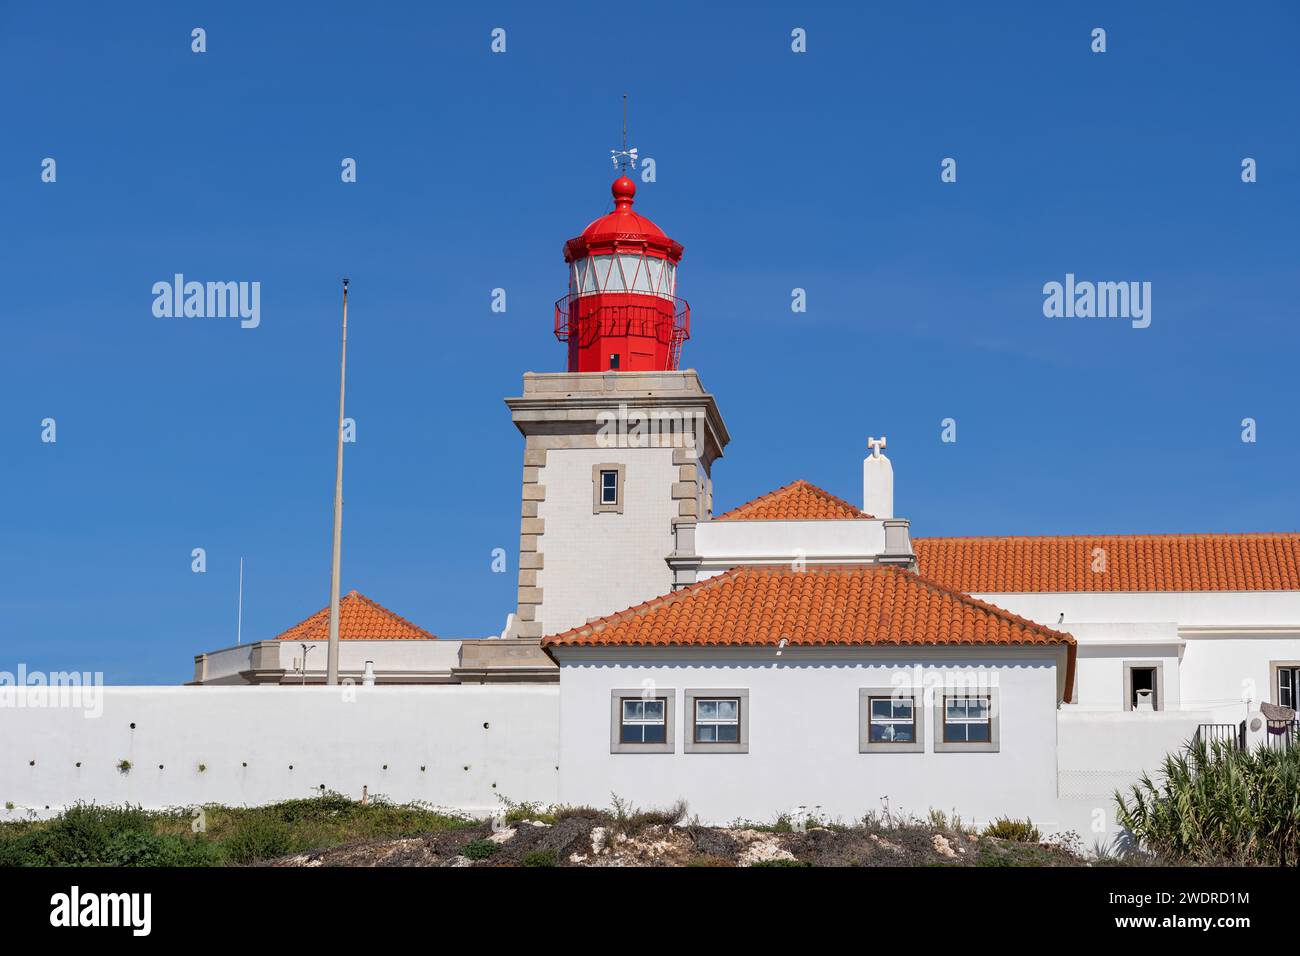 Le phare de Cabo da Roca de 1772 au Portugal. Tour carrée avec lanterne rouge s'élevant de la maison du gardien. Banque D'Images